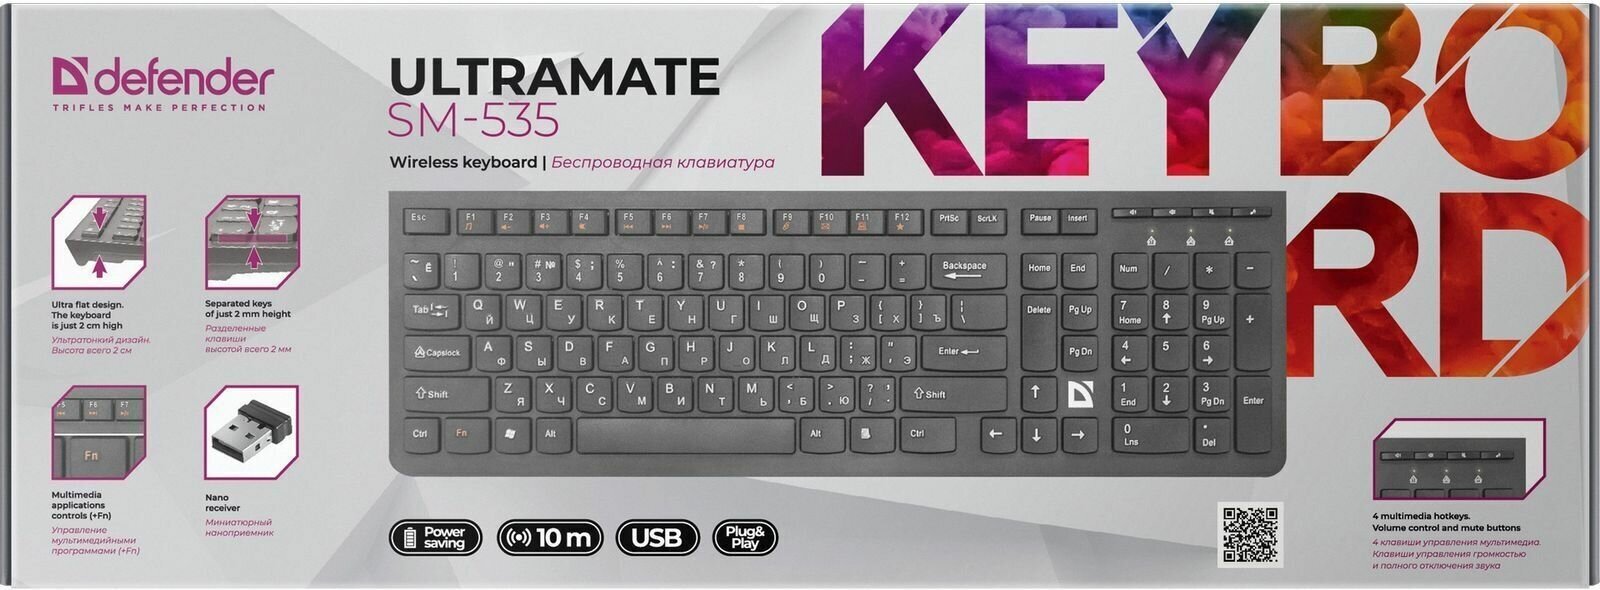 Беспроводная клавиатура Defender UltraMate SM-535 RU, мультимедиа